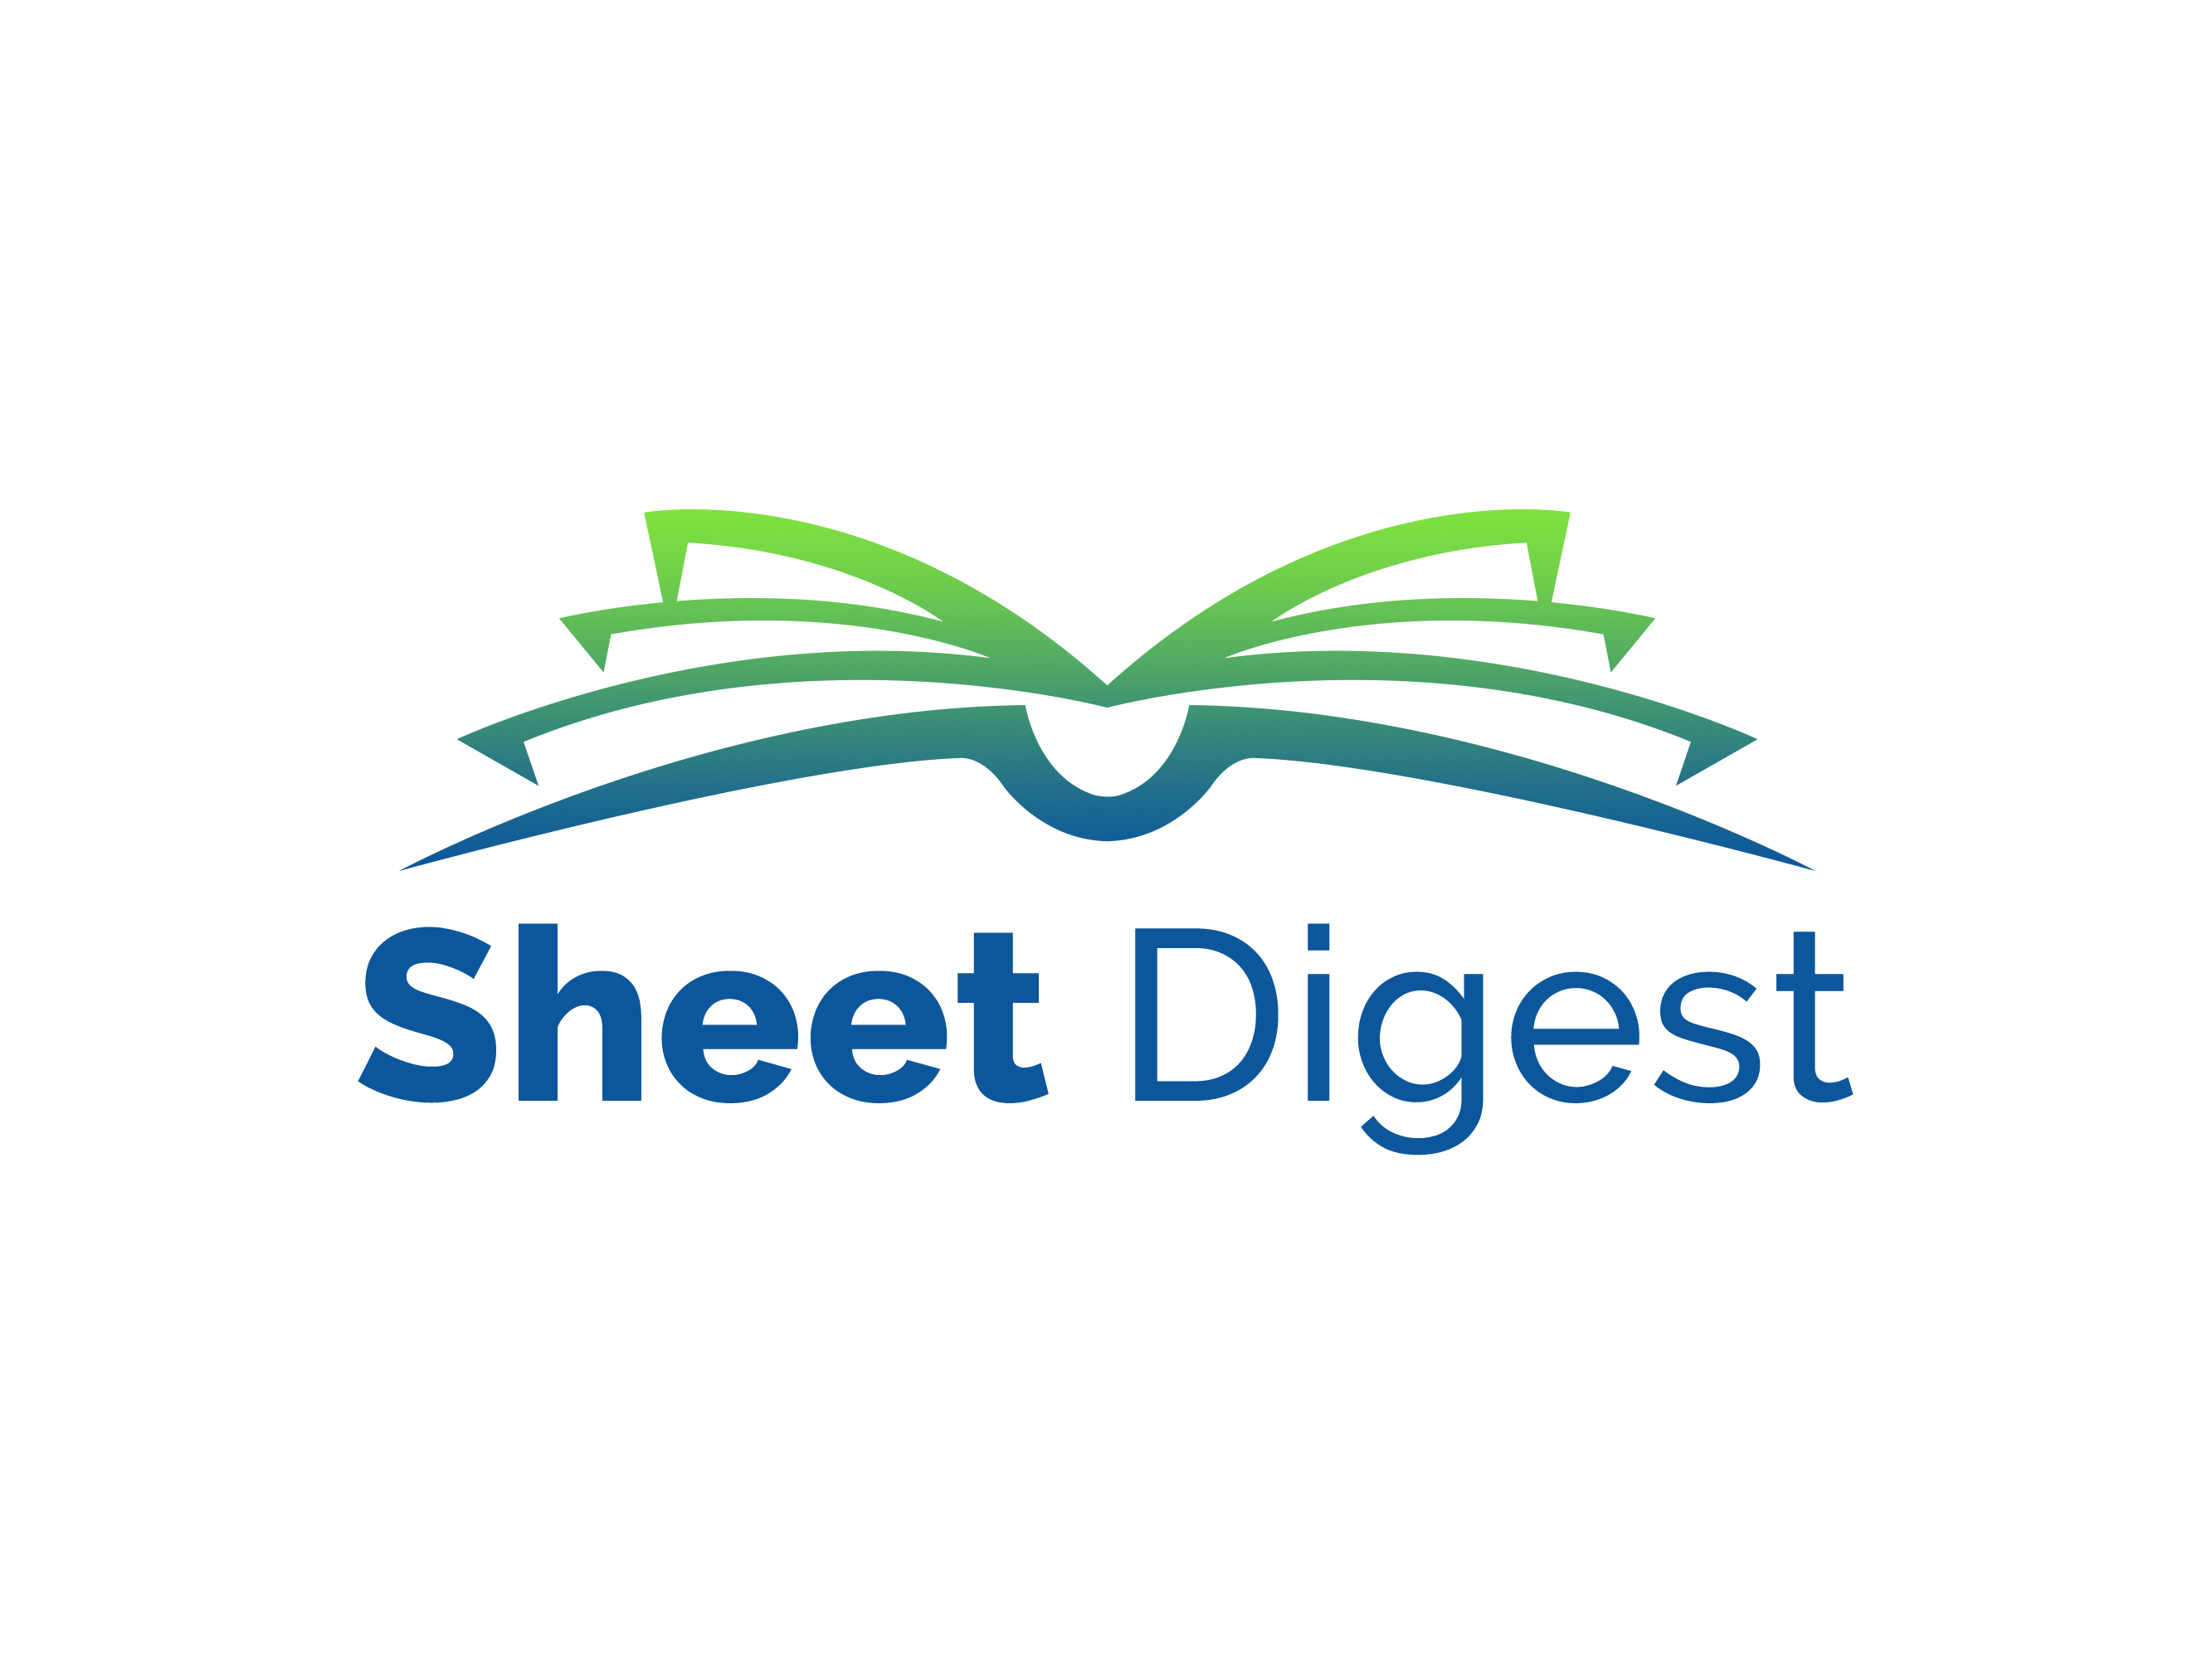 Sheet Digest